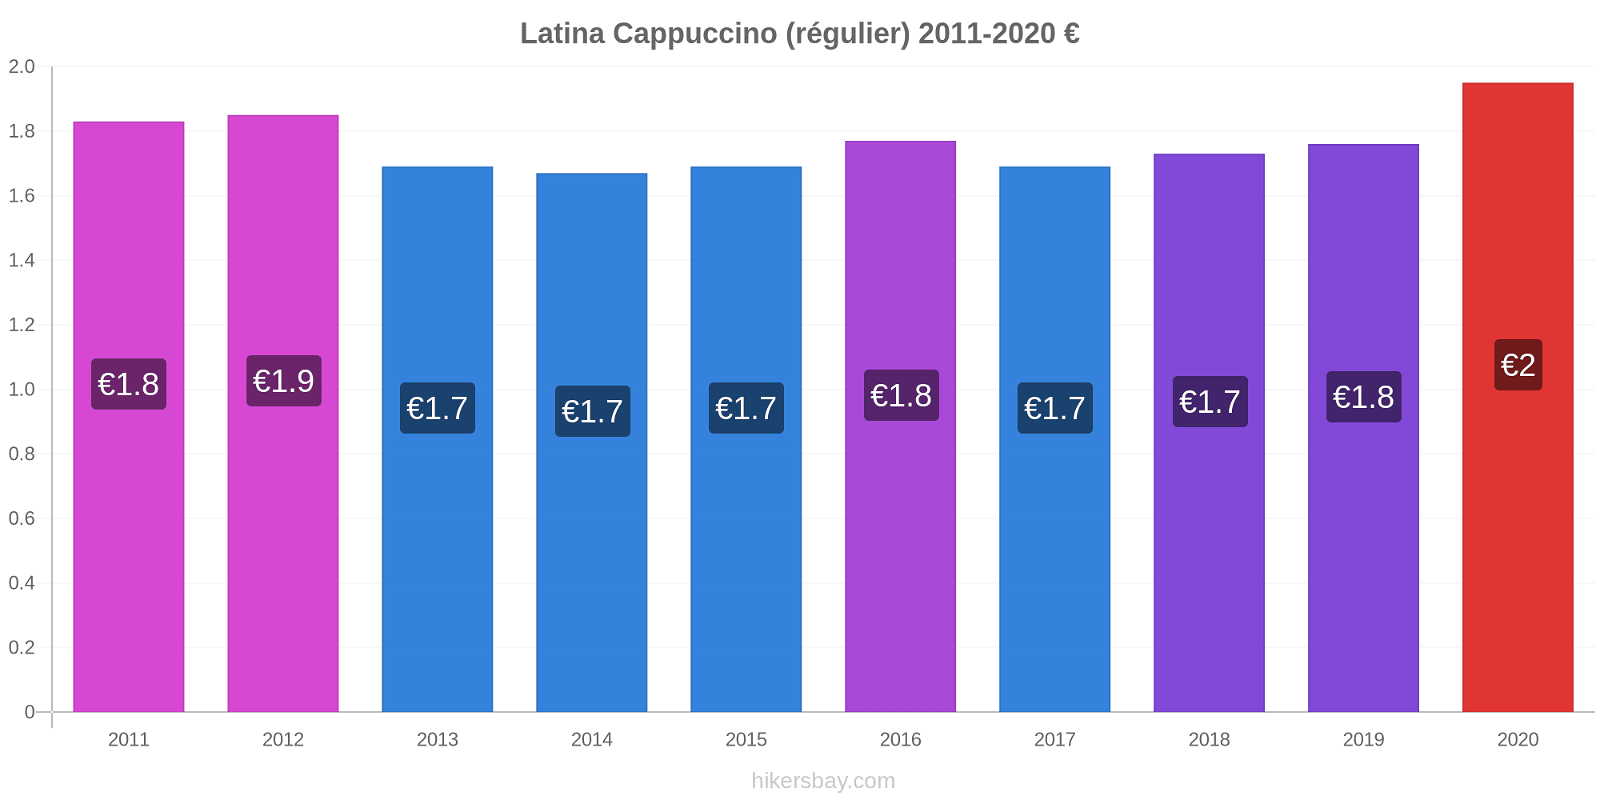 Latina changements de prix Cappuccino (régulier) hikersbay.com